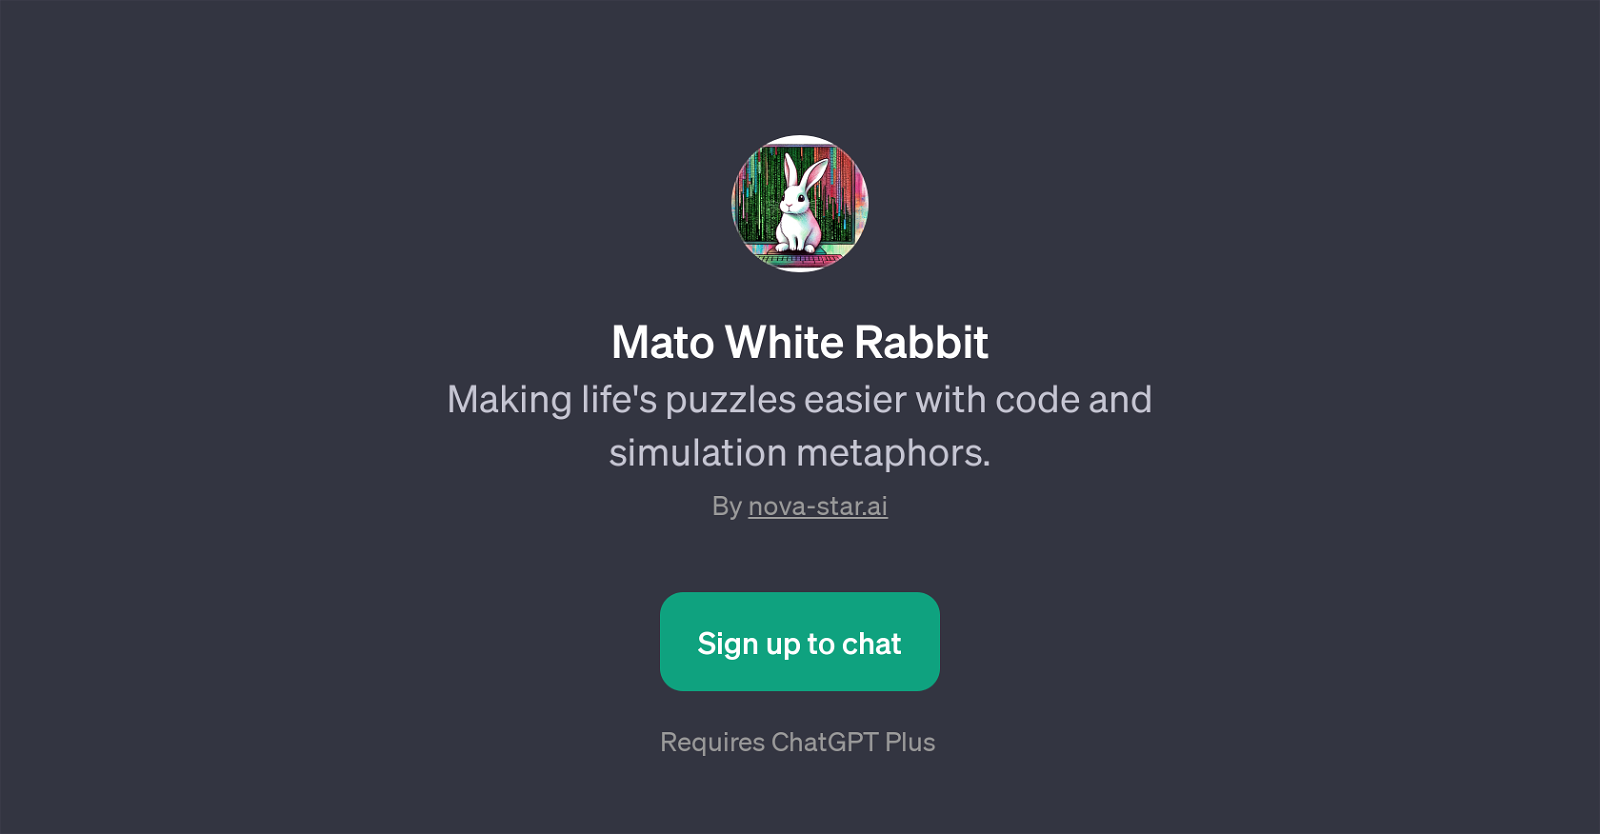 Mato White Rabbit website